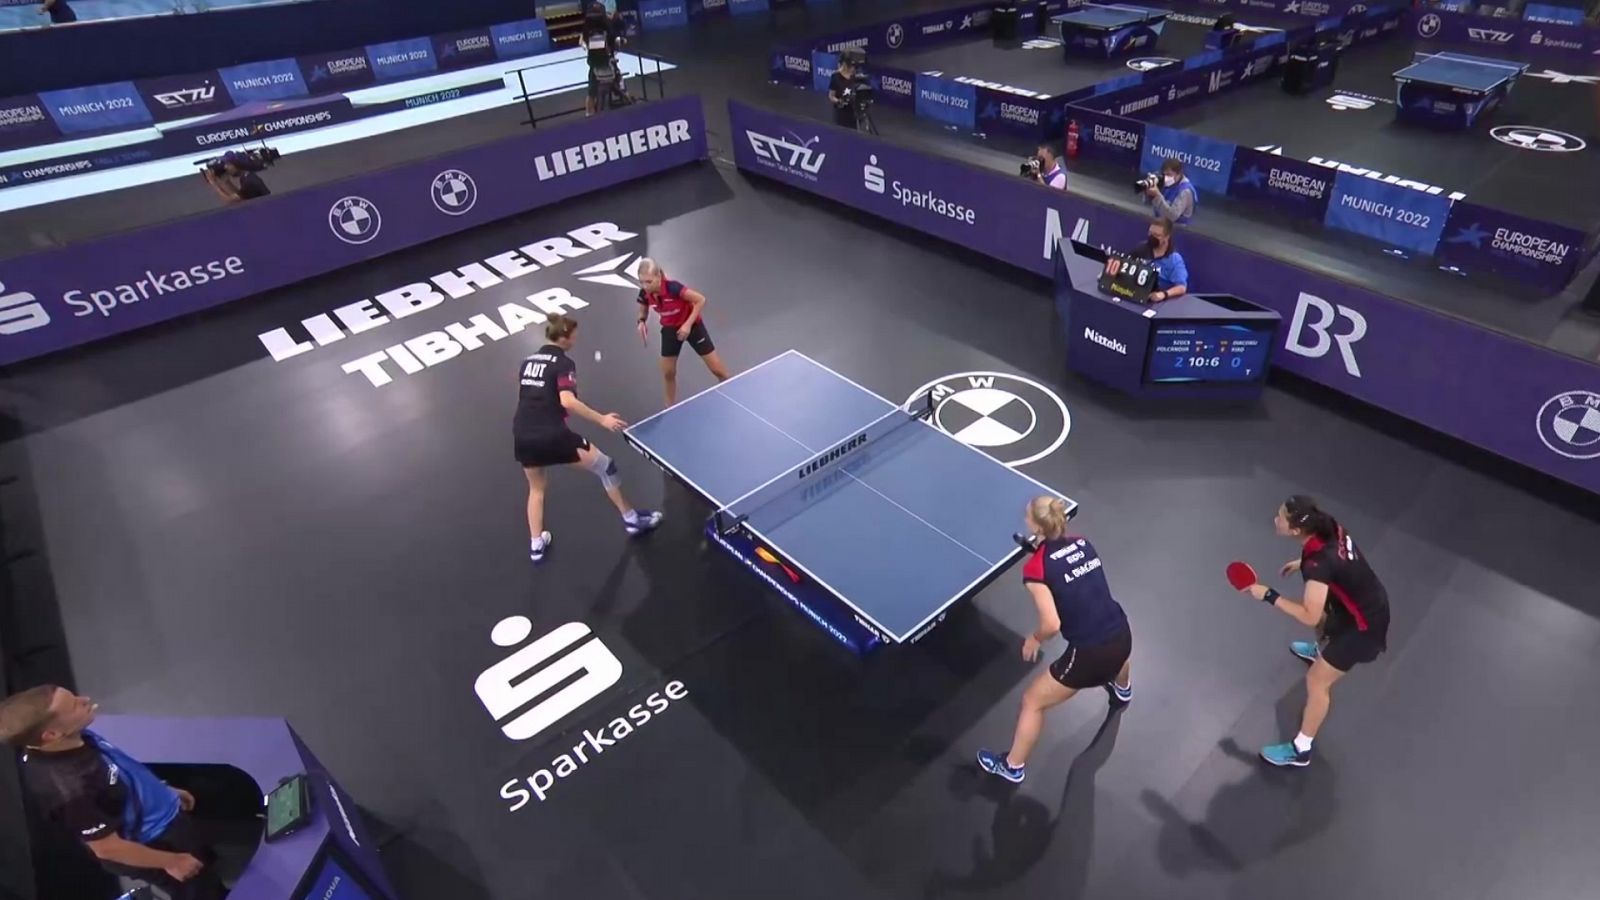 Tenis de mesa - Campeonato de Europa. 2ª Semifinal dobles femeninos: Polcanova/Szocs (mixto) - Xiao/Diaconu (mixto) - RTVE Play